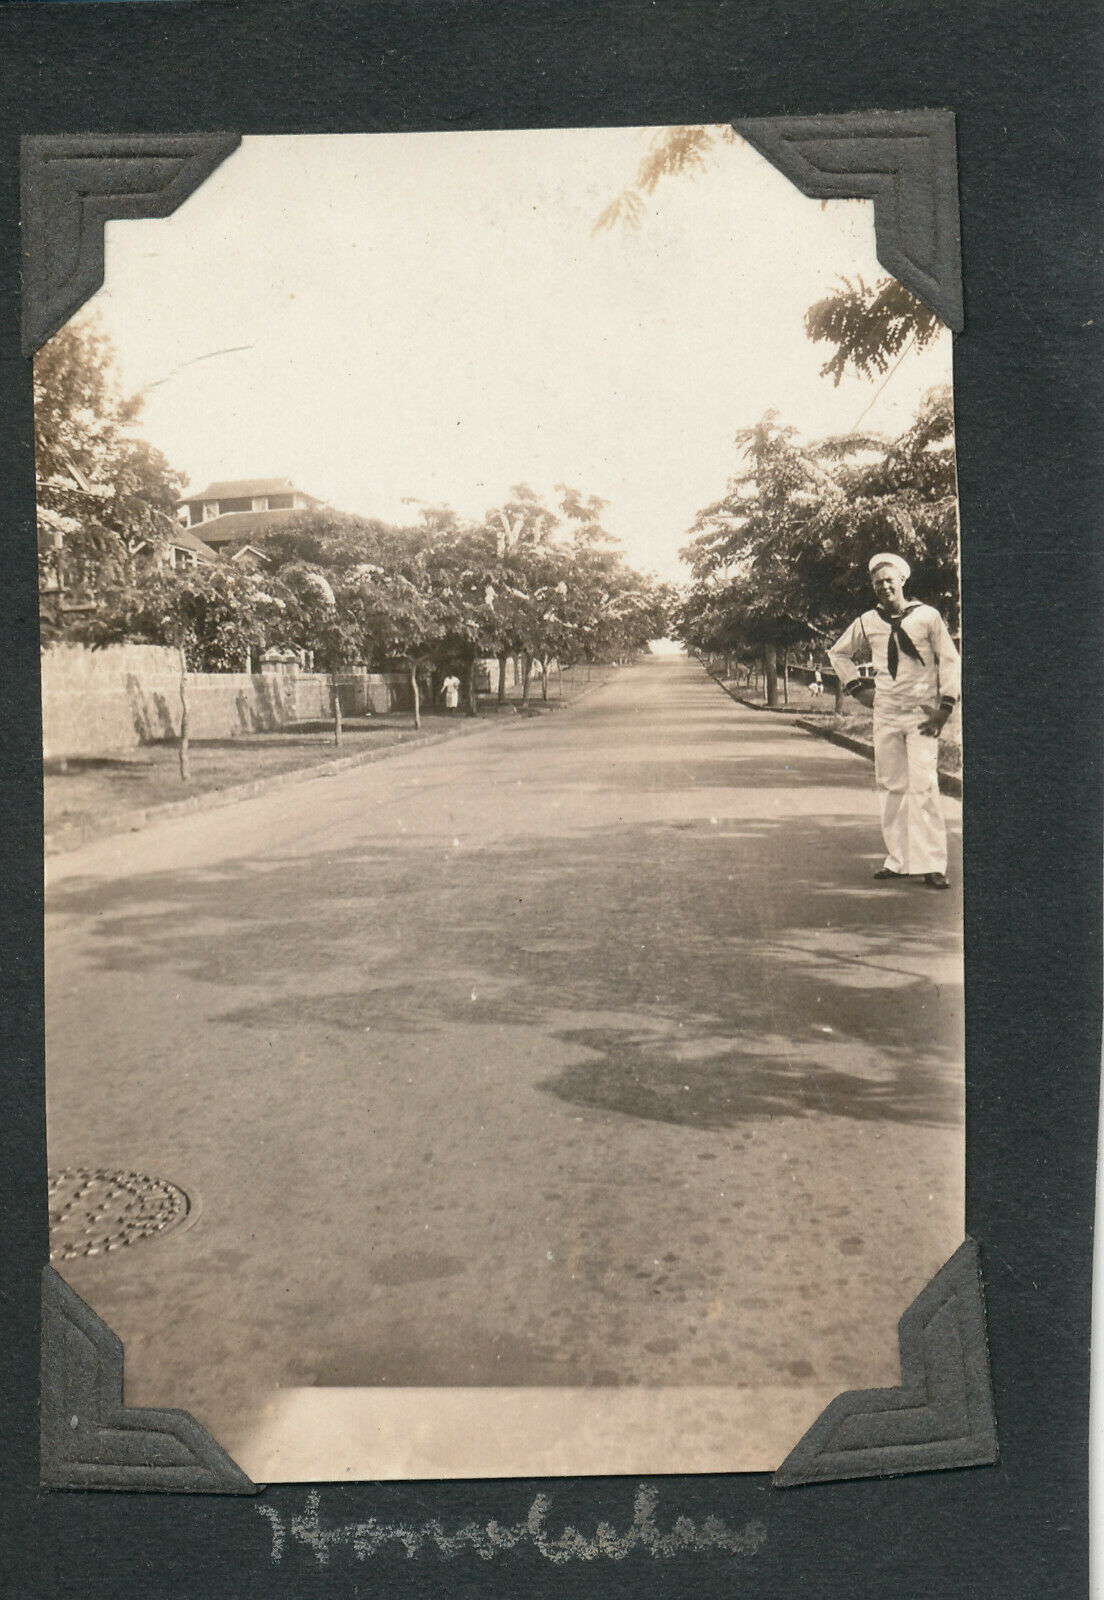 1925 Uss Tennessee At Hawaii Photo Sailor On Honolulu Street